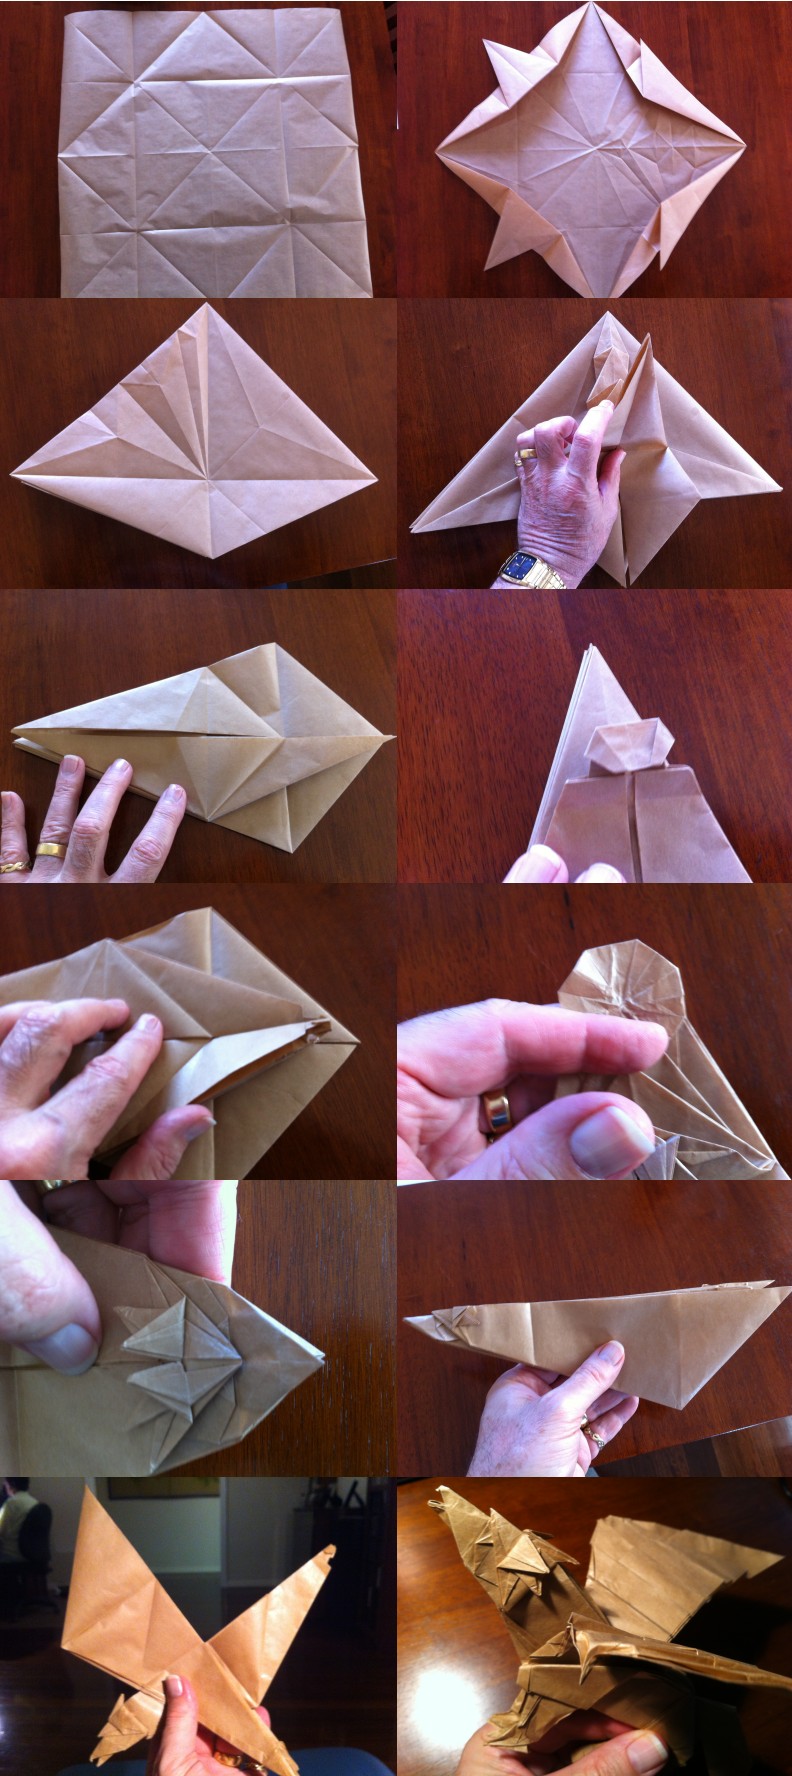 独特的折纸教程展示了精彩折纸鹰马手工折纸教程